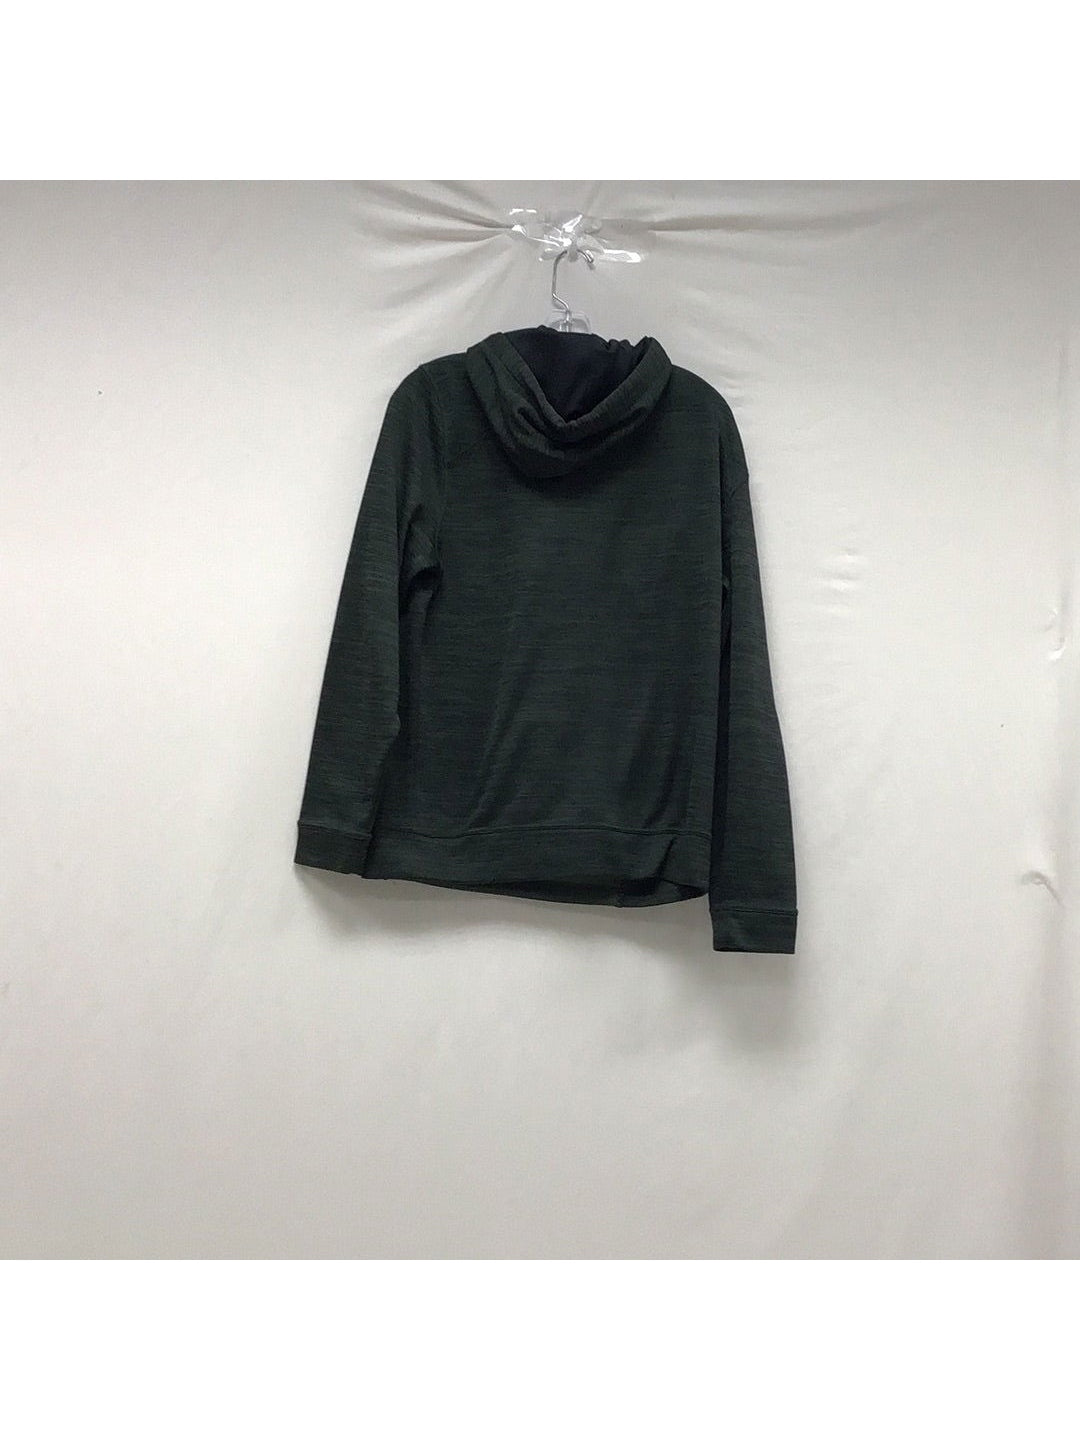 Champion Men's Hoodie Sweatshirt Dark green  Tagless Embroider - The Kennedy Collective Thrift - 